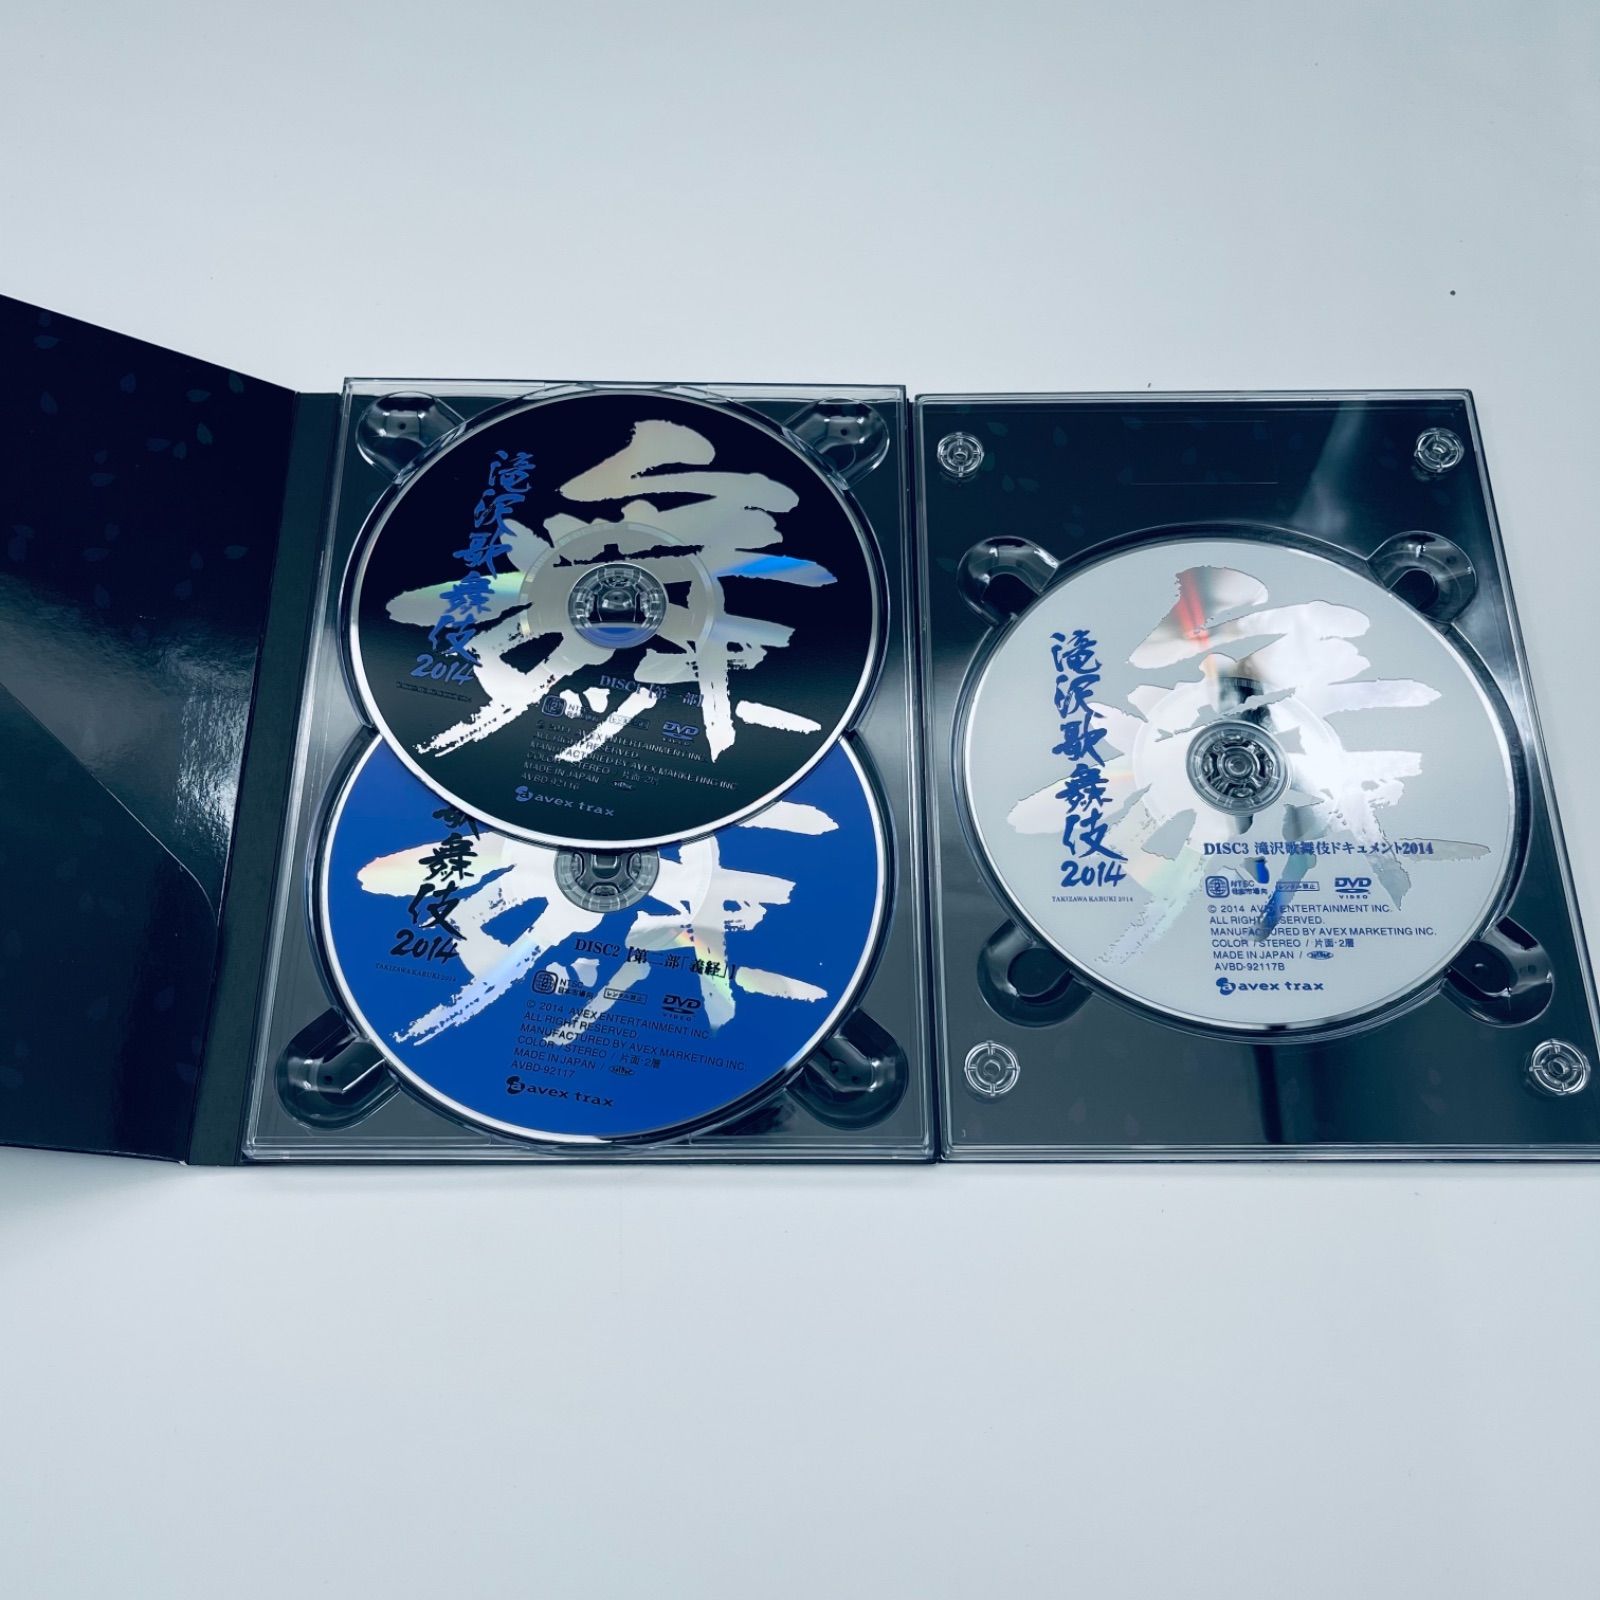 滝沢歌舞伎2014+滝沢歌舞伎2012〈初回生産限定盤・3枚組〉 - メルカリ